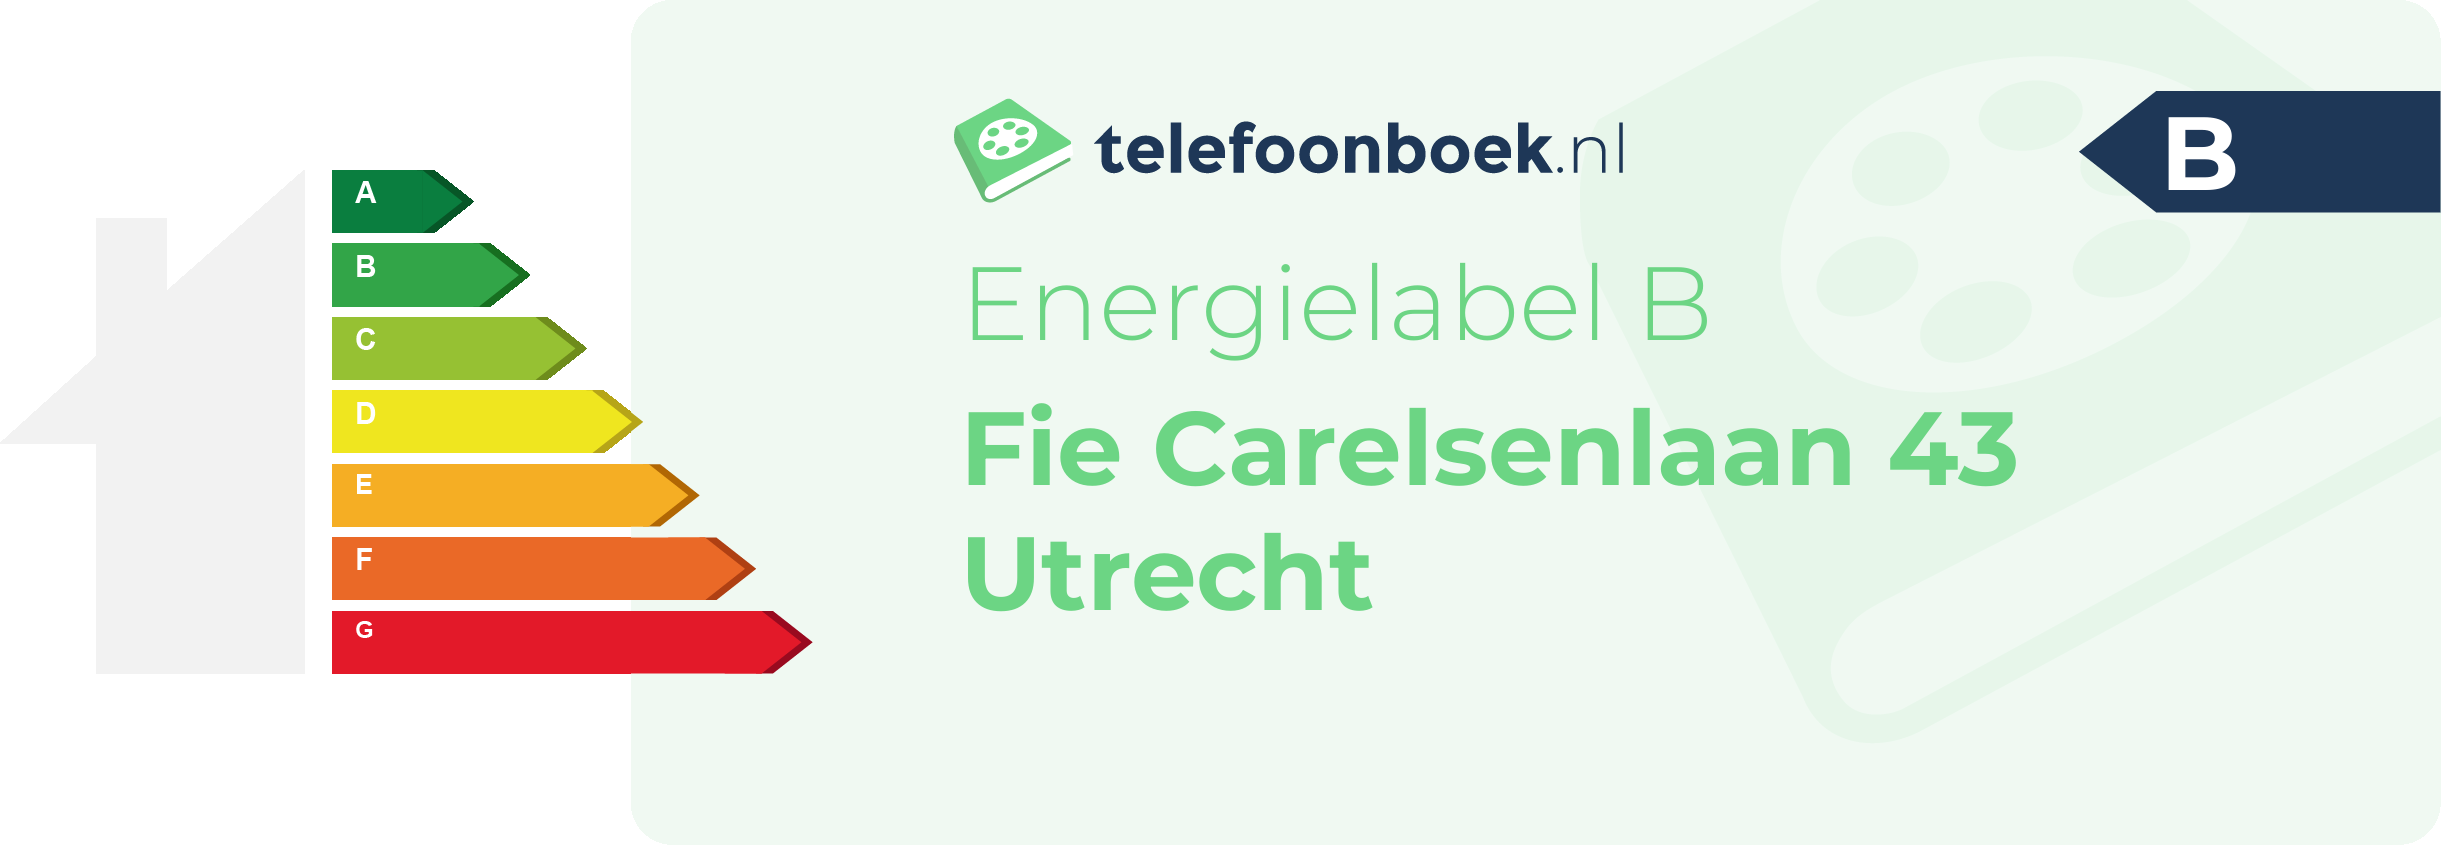 Energielabel Fie Carelsenlaan 43 Utrecht